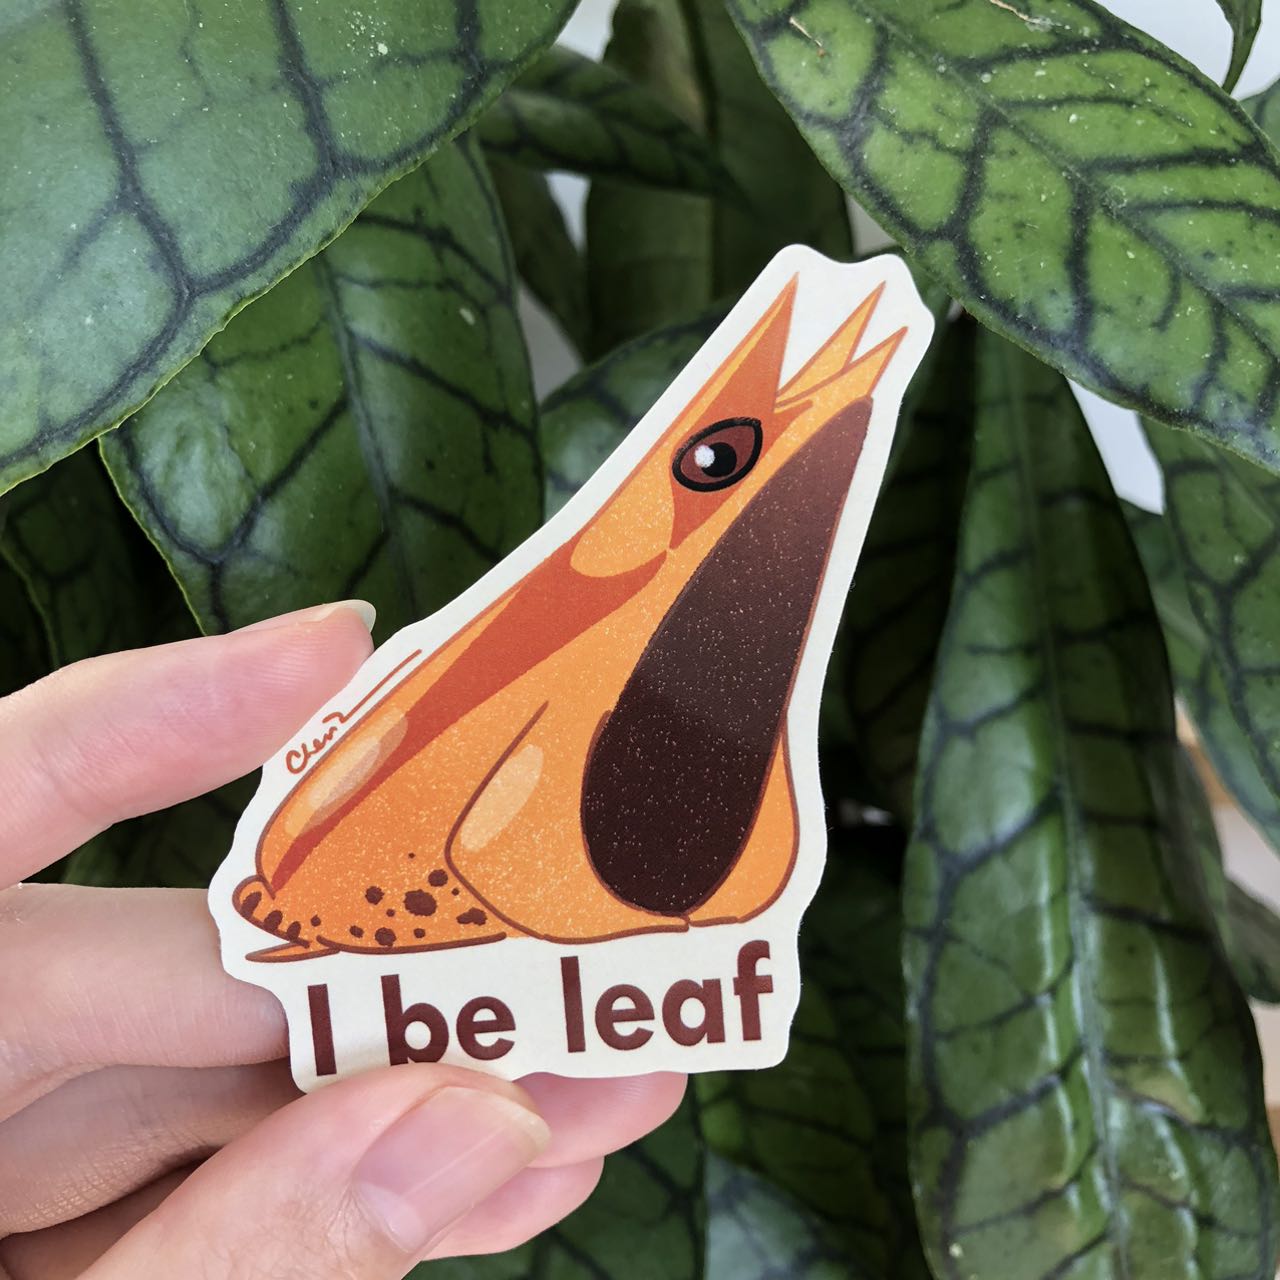 I beleaf leaf frog sticker